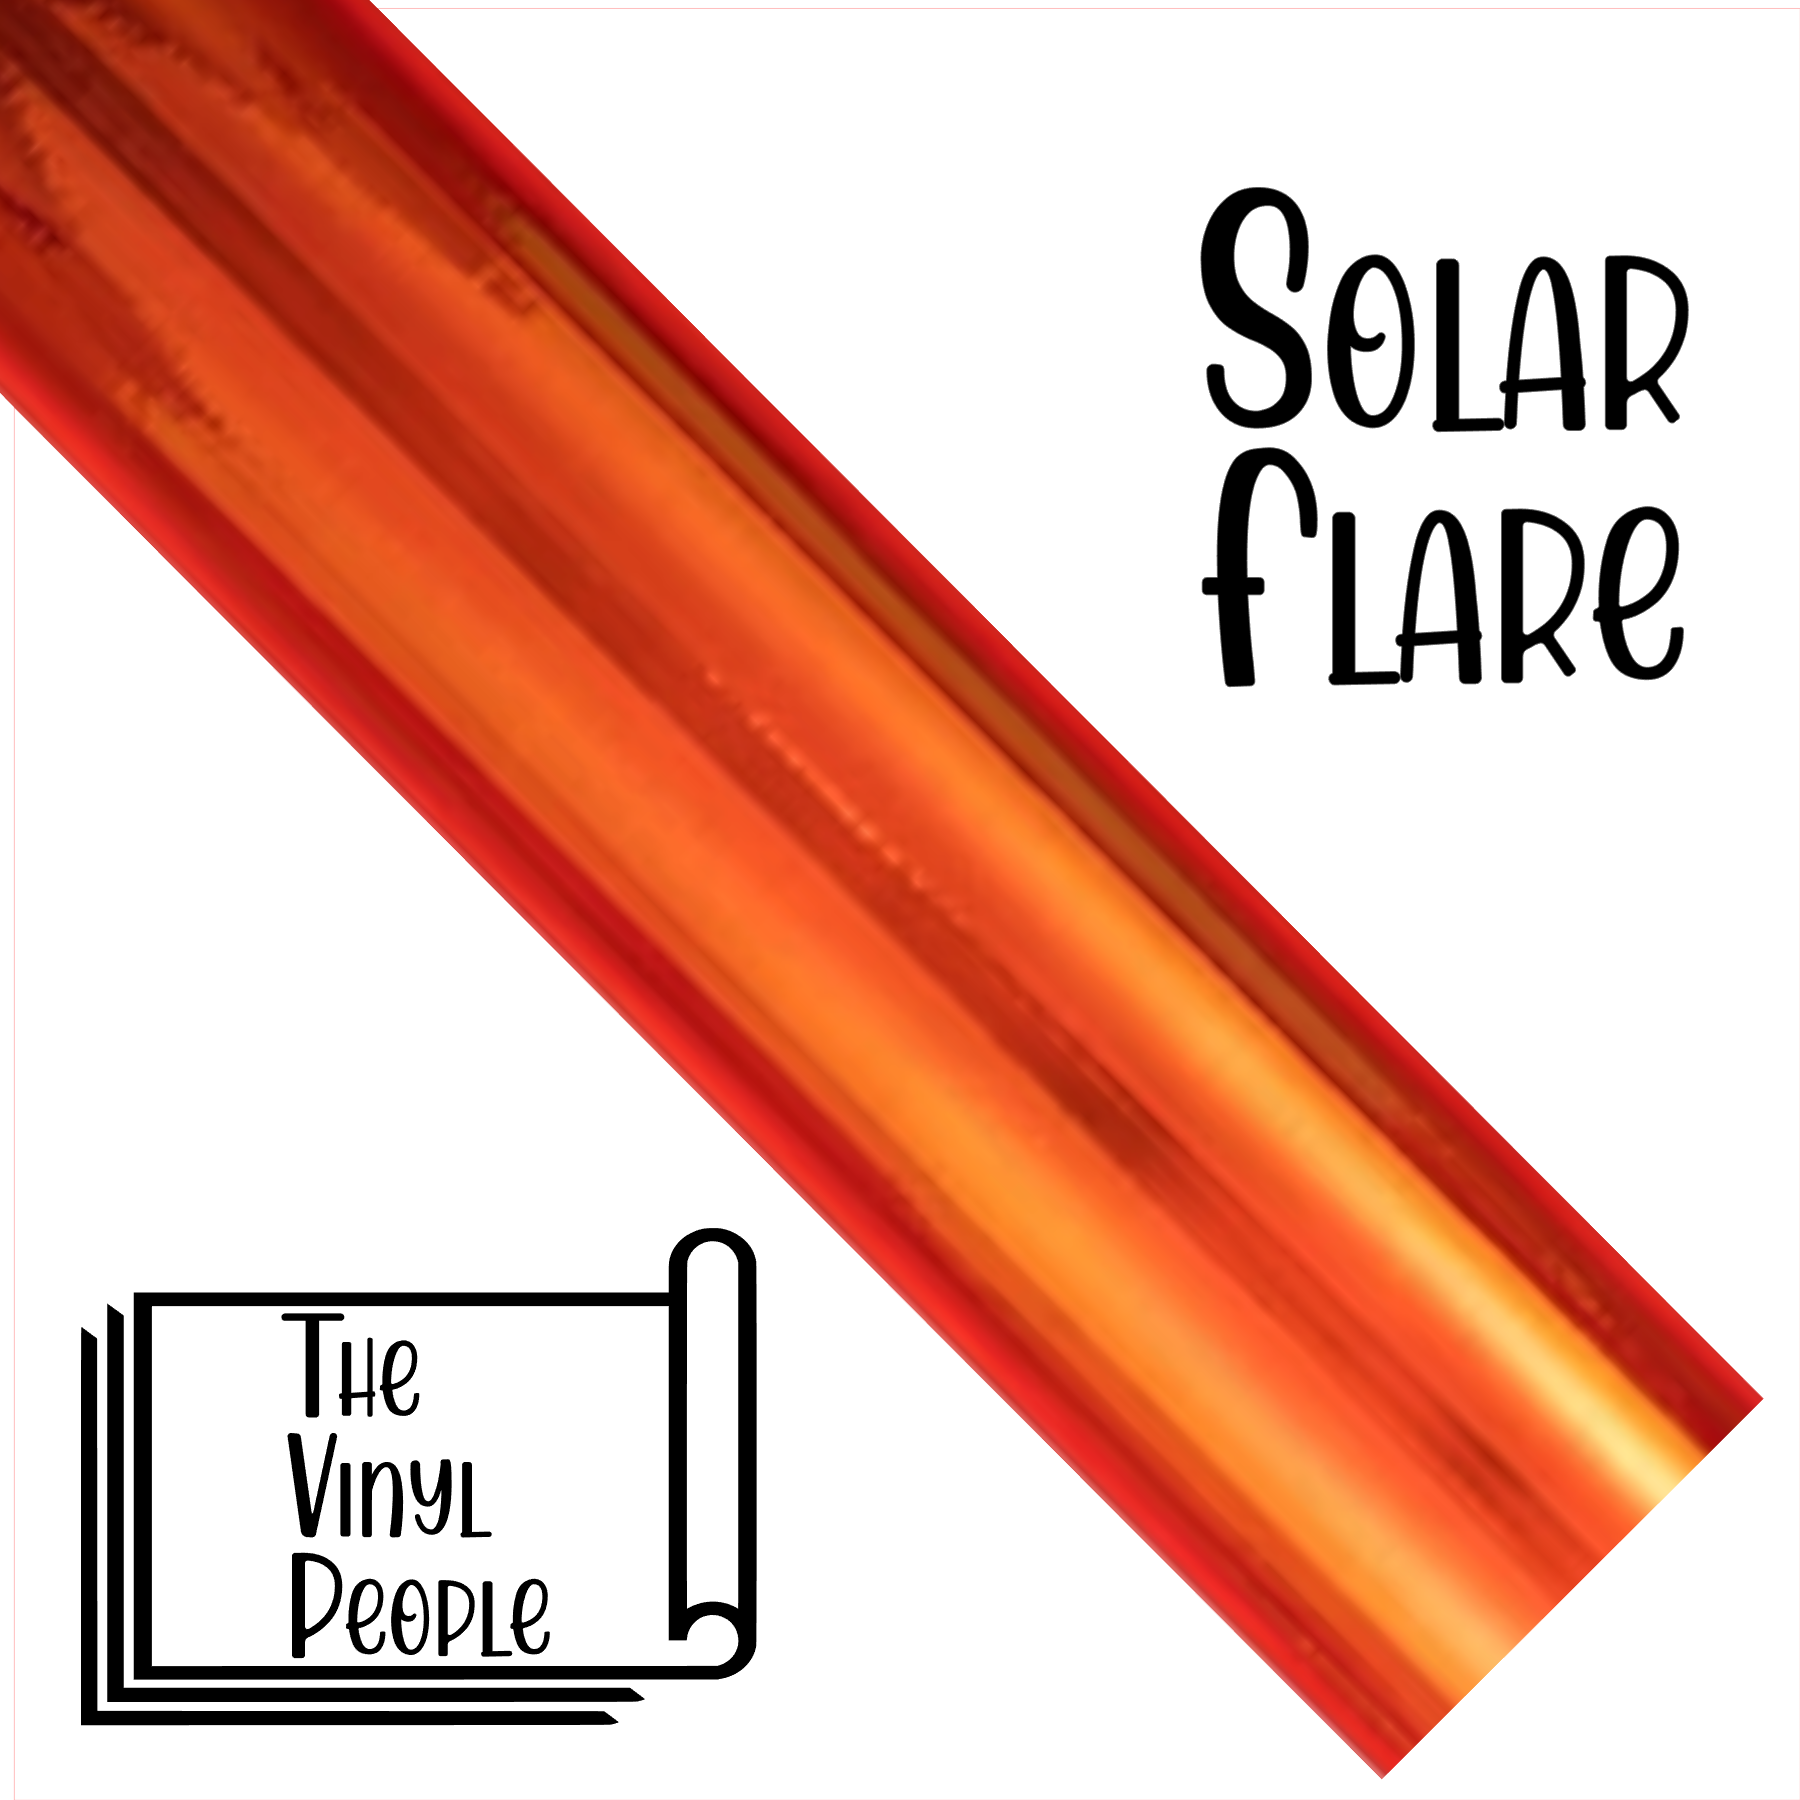 Solar Flare - 12" x 12" sheet